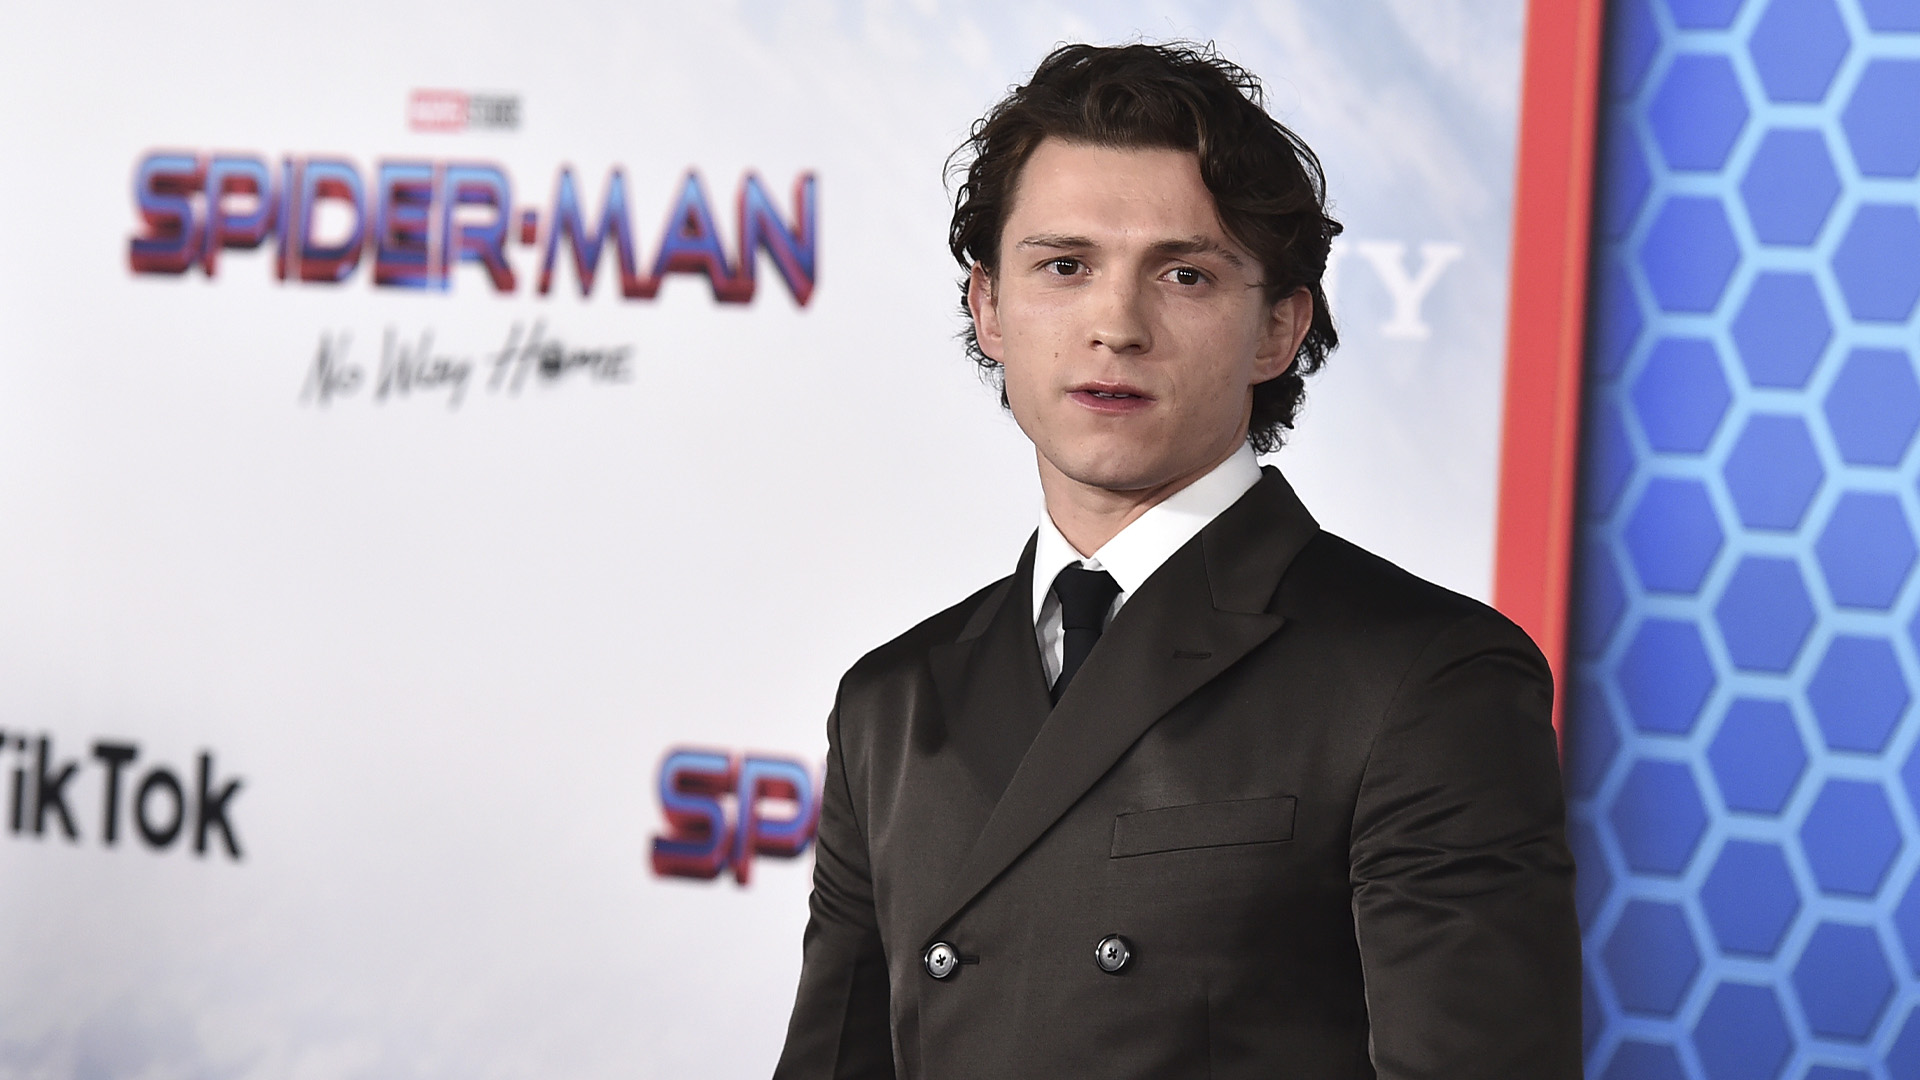 L'acteur qui incarne «Spider-Man», Tom Holland, a annoncé l'été dernier à ses dizaines de millions d'abonnés sur Instagram que lire ce qui se dit sur lui en ligne nuit énormément à son état mental.